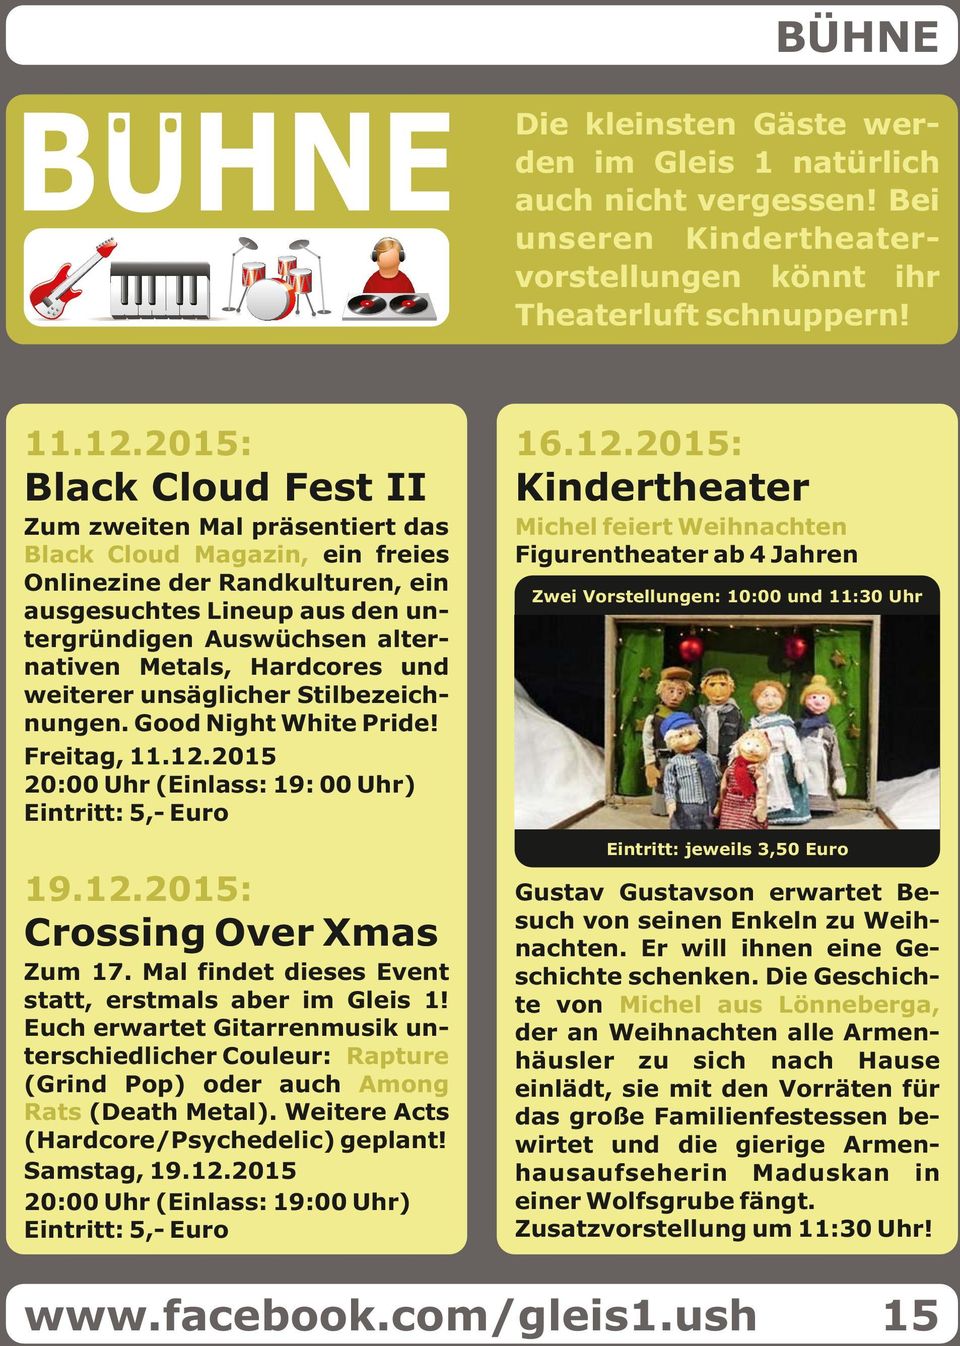 2015: Black Cloud Fest II Kindertheater Zum zweiten Mal präsentiert das Black Cloud Magazin, ein freies Onlinezine der Randkulturen, ein ausgesuchtes Lineup aus den untergründigen Auswüchsen